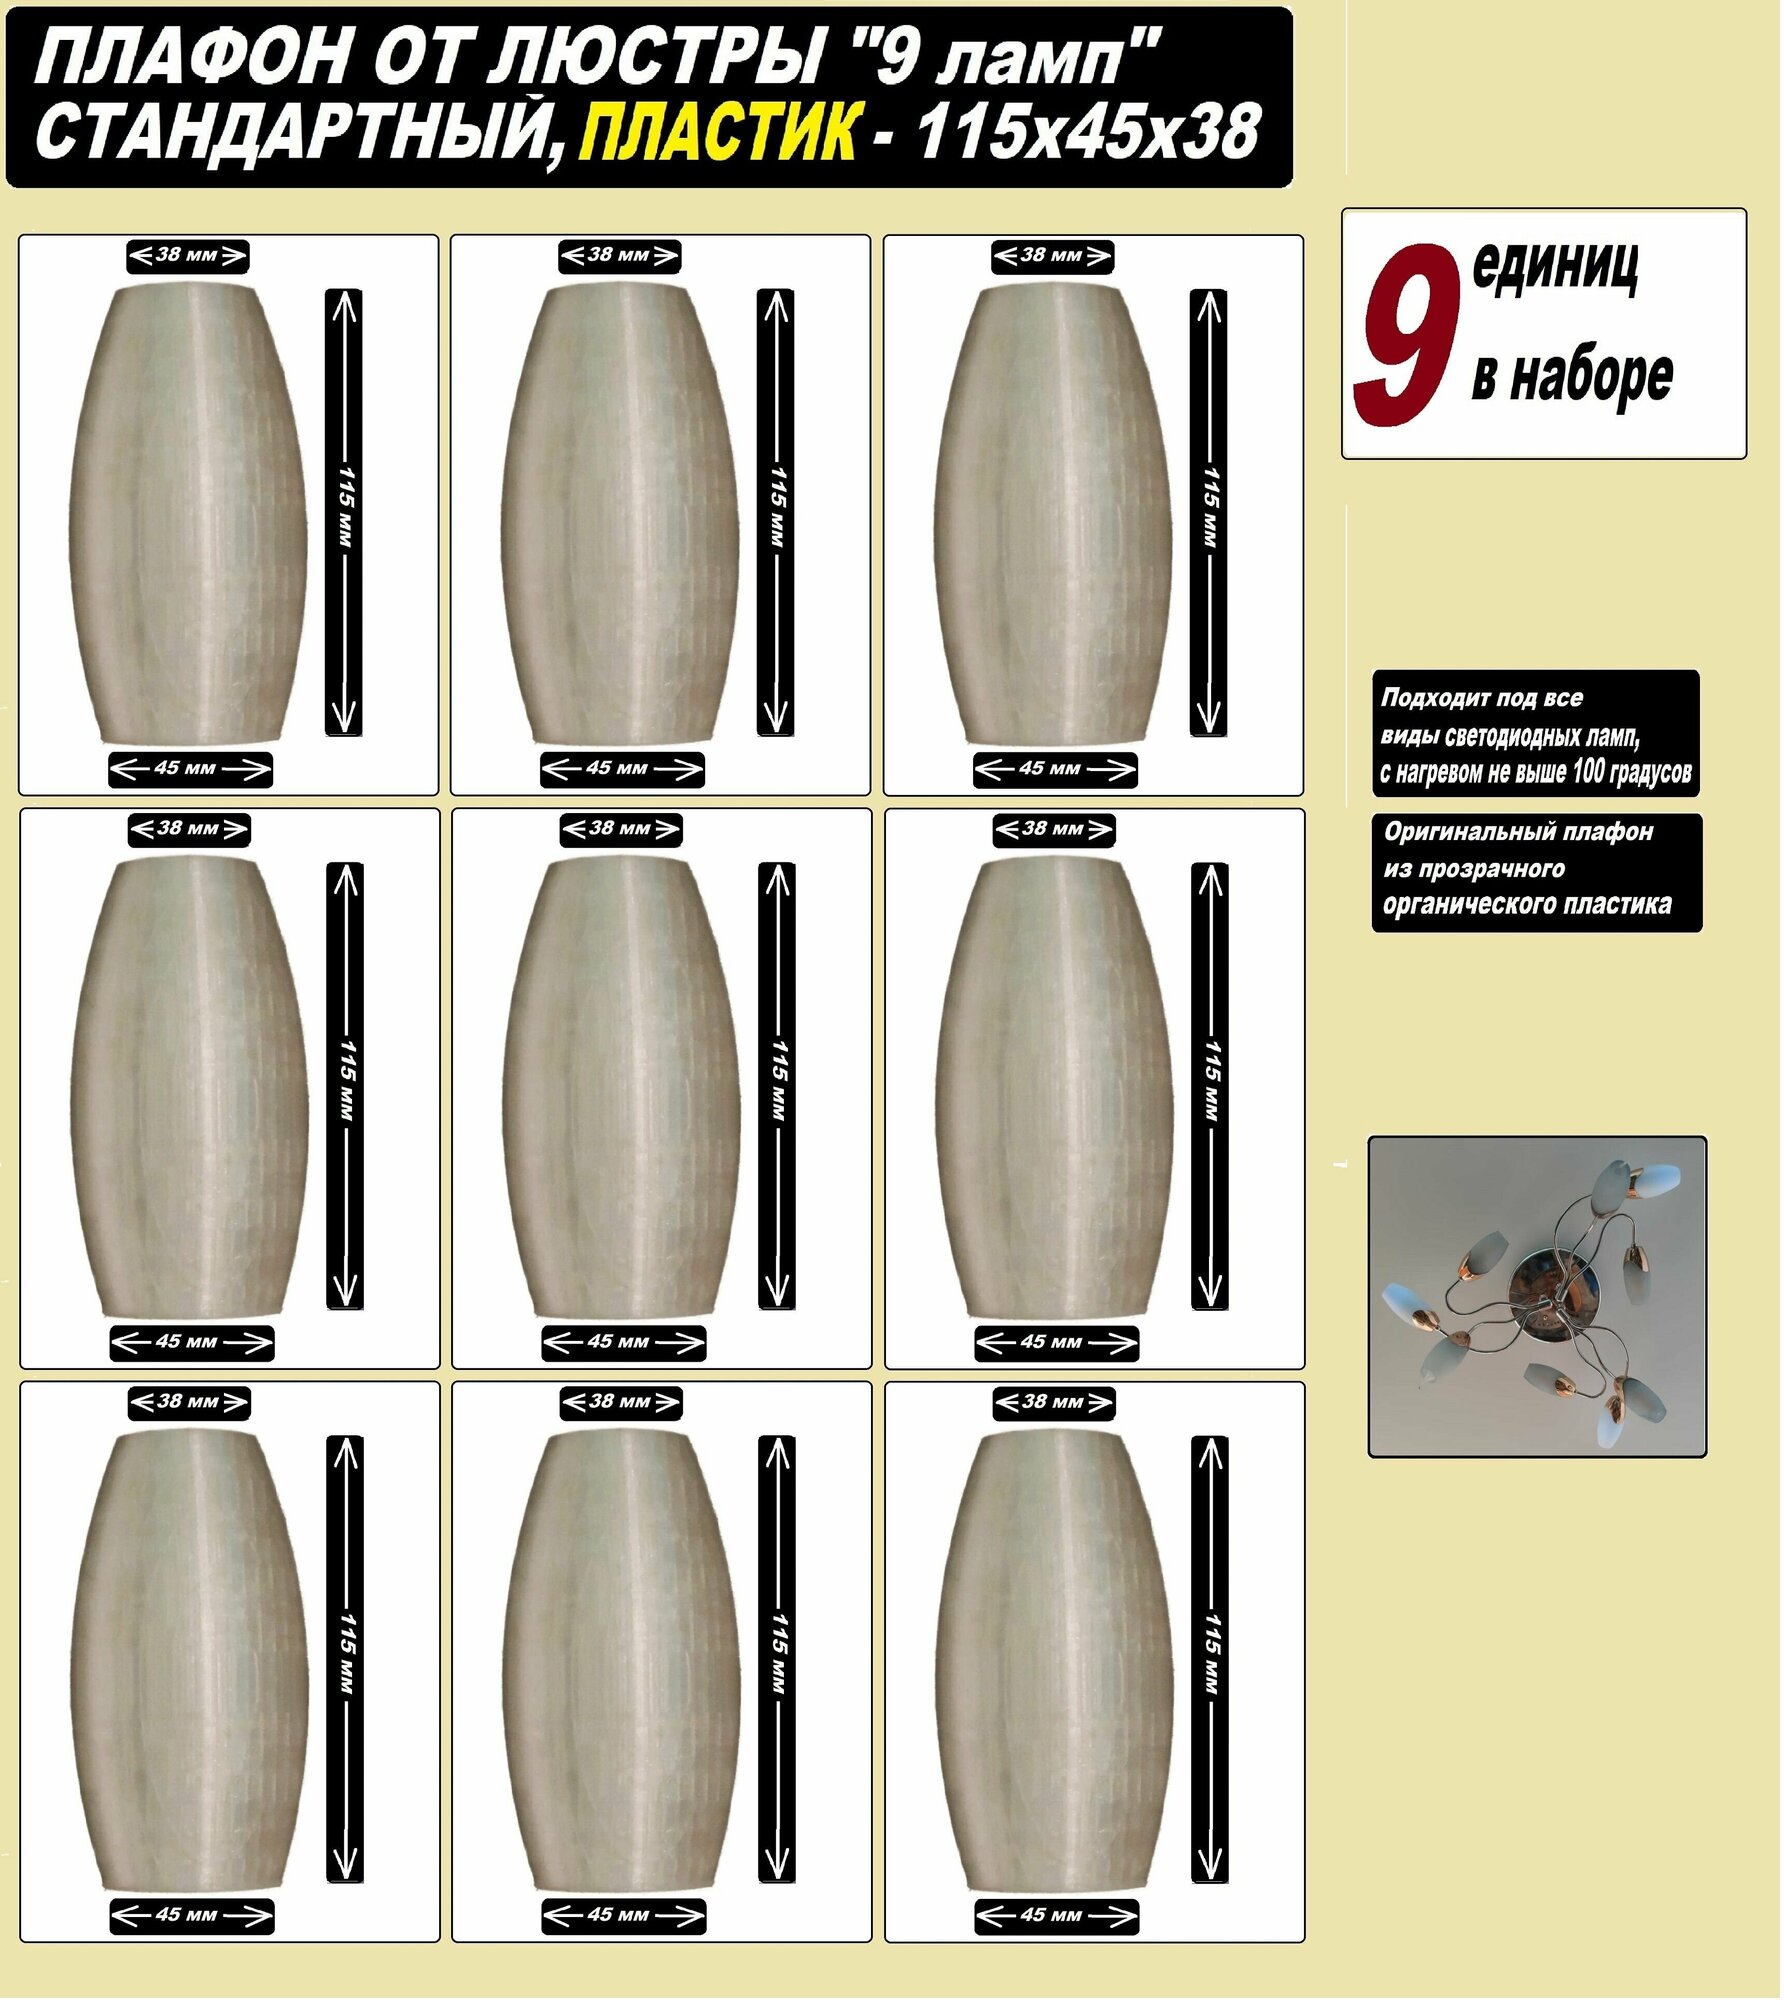 Плафоны для люстры 9 ламп оригинальный 115 x 45 x 38 размер, прозрачный матовый пластик цоколь e14 - 9 единиц в наборе